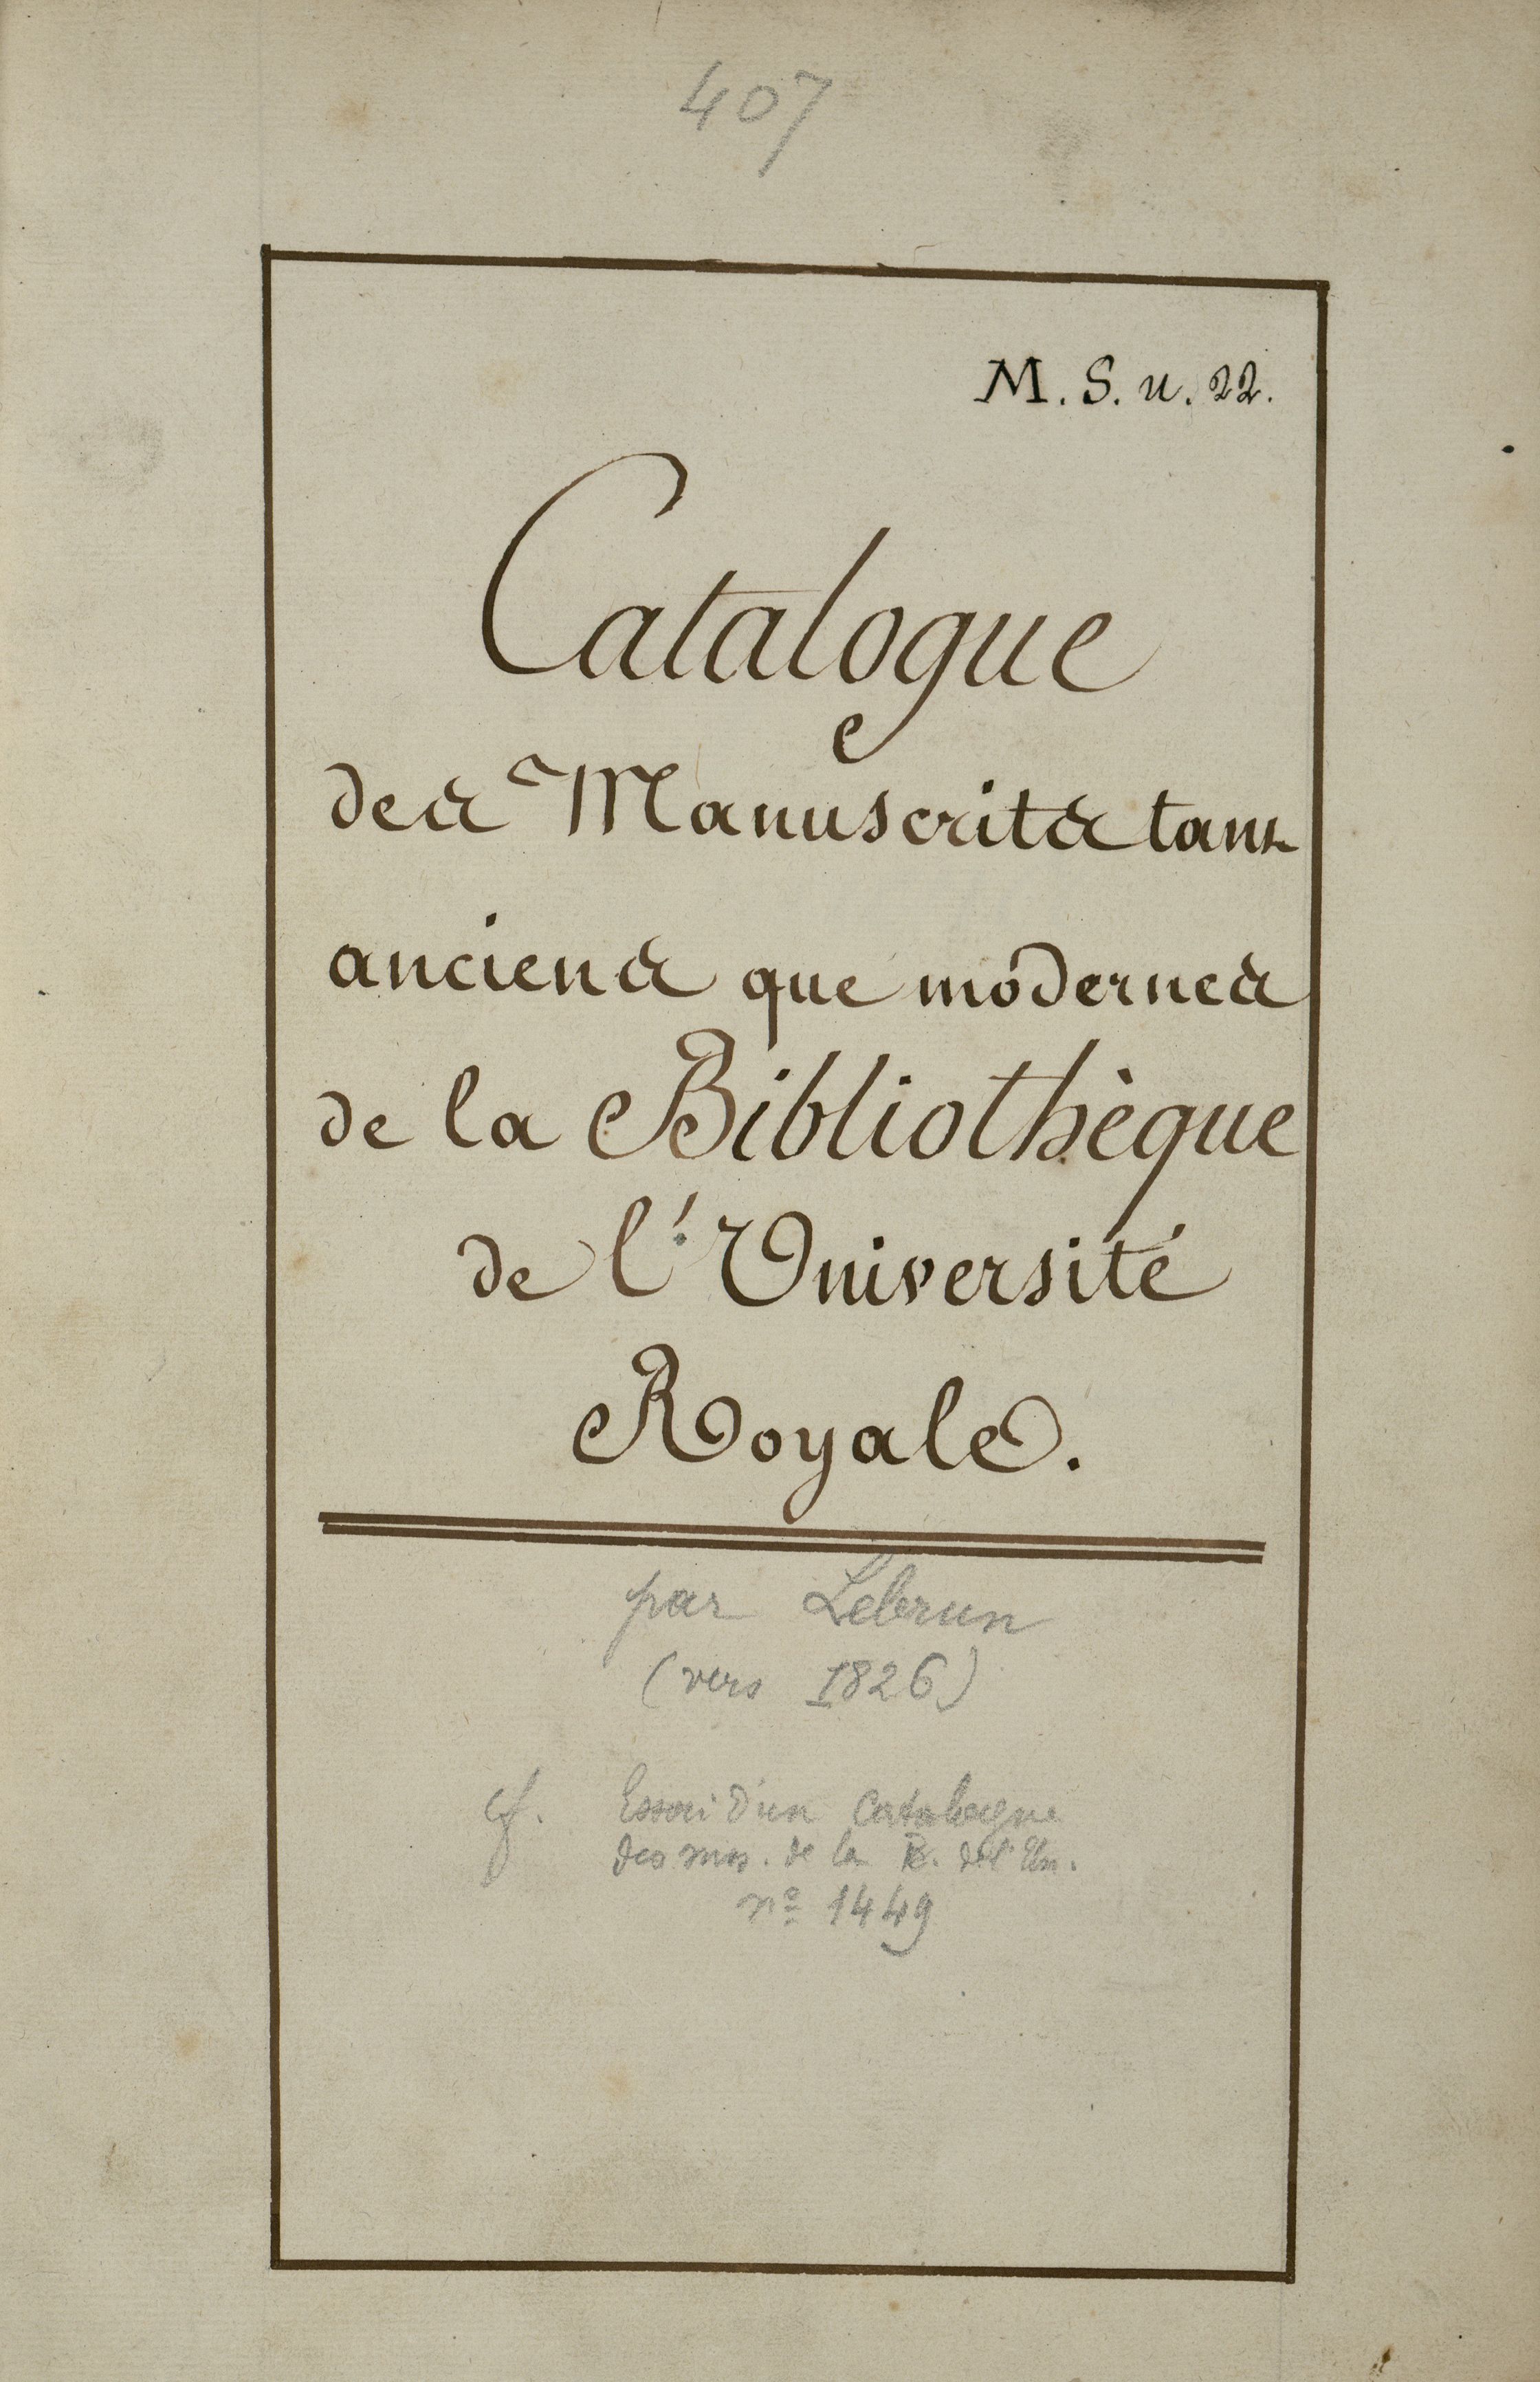 Vignette de la collection "Histoire des collections de la bibliothèque de la Sorbonne" (source : ark:/15733/19vh)